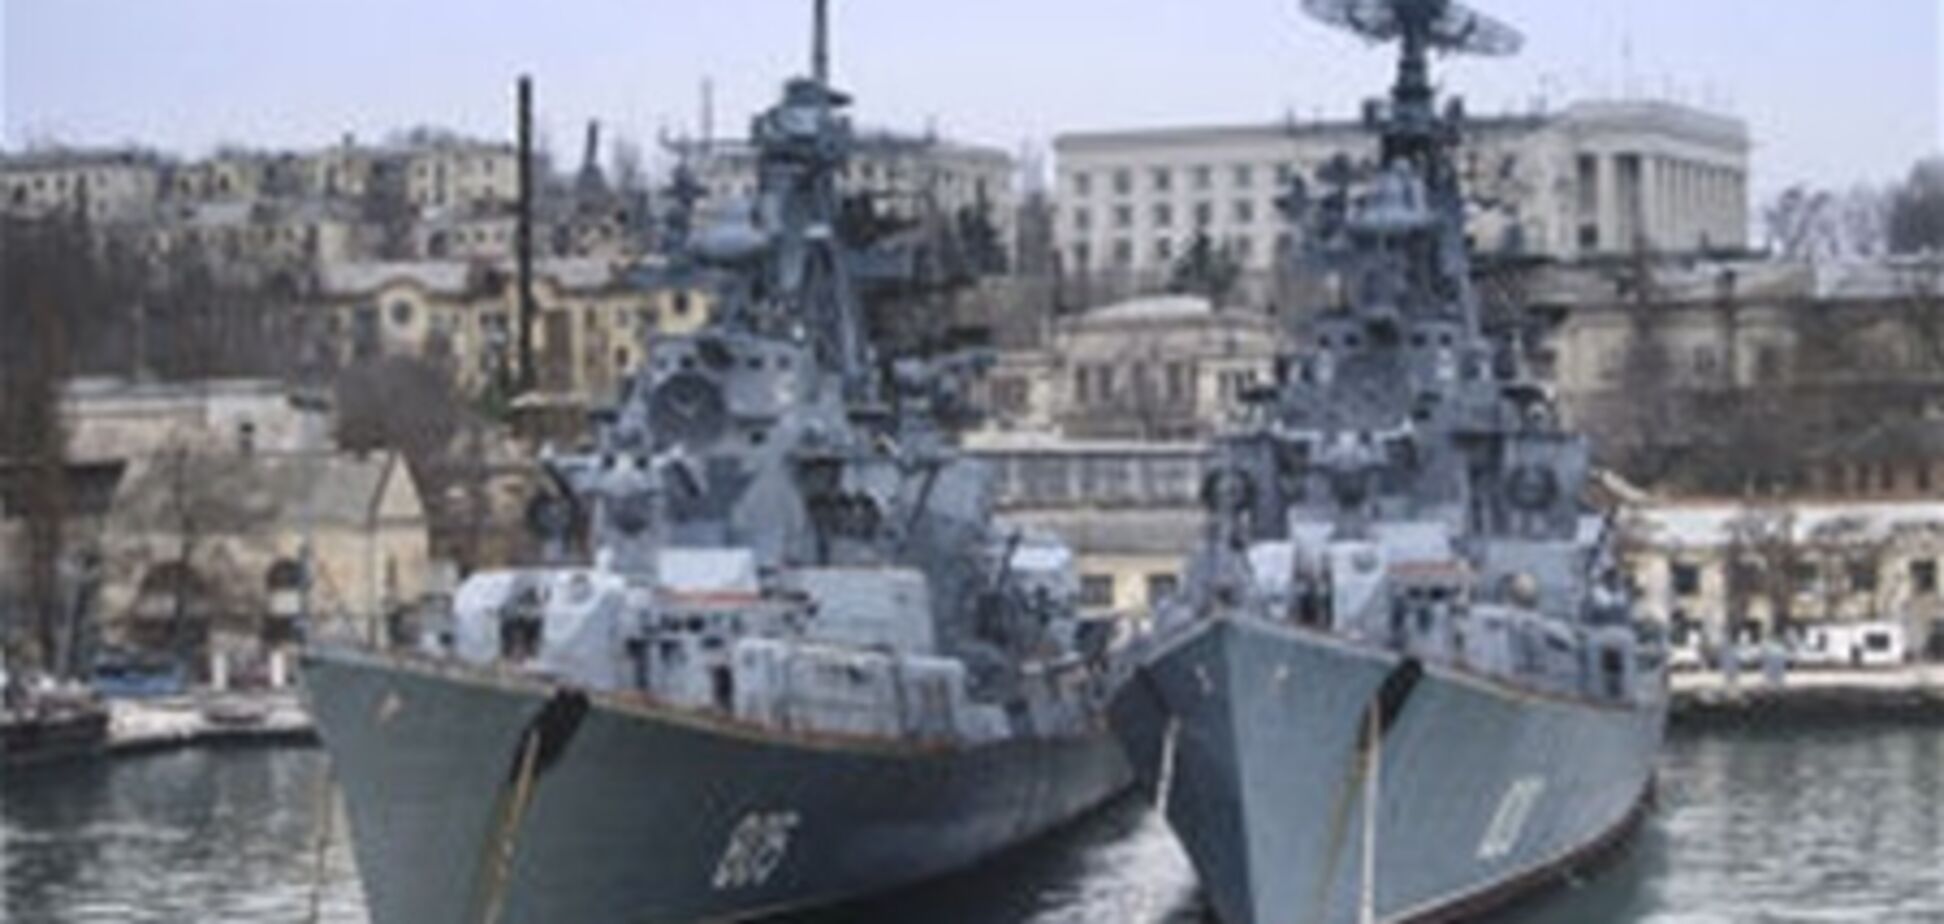 Путин запретил ремонтировать корабли за границей - СМИ